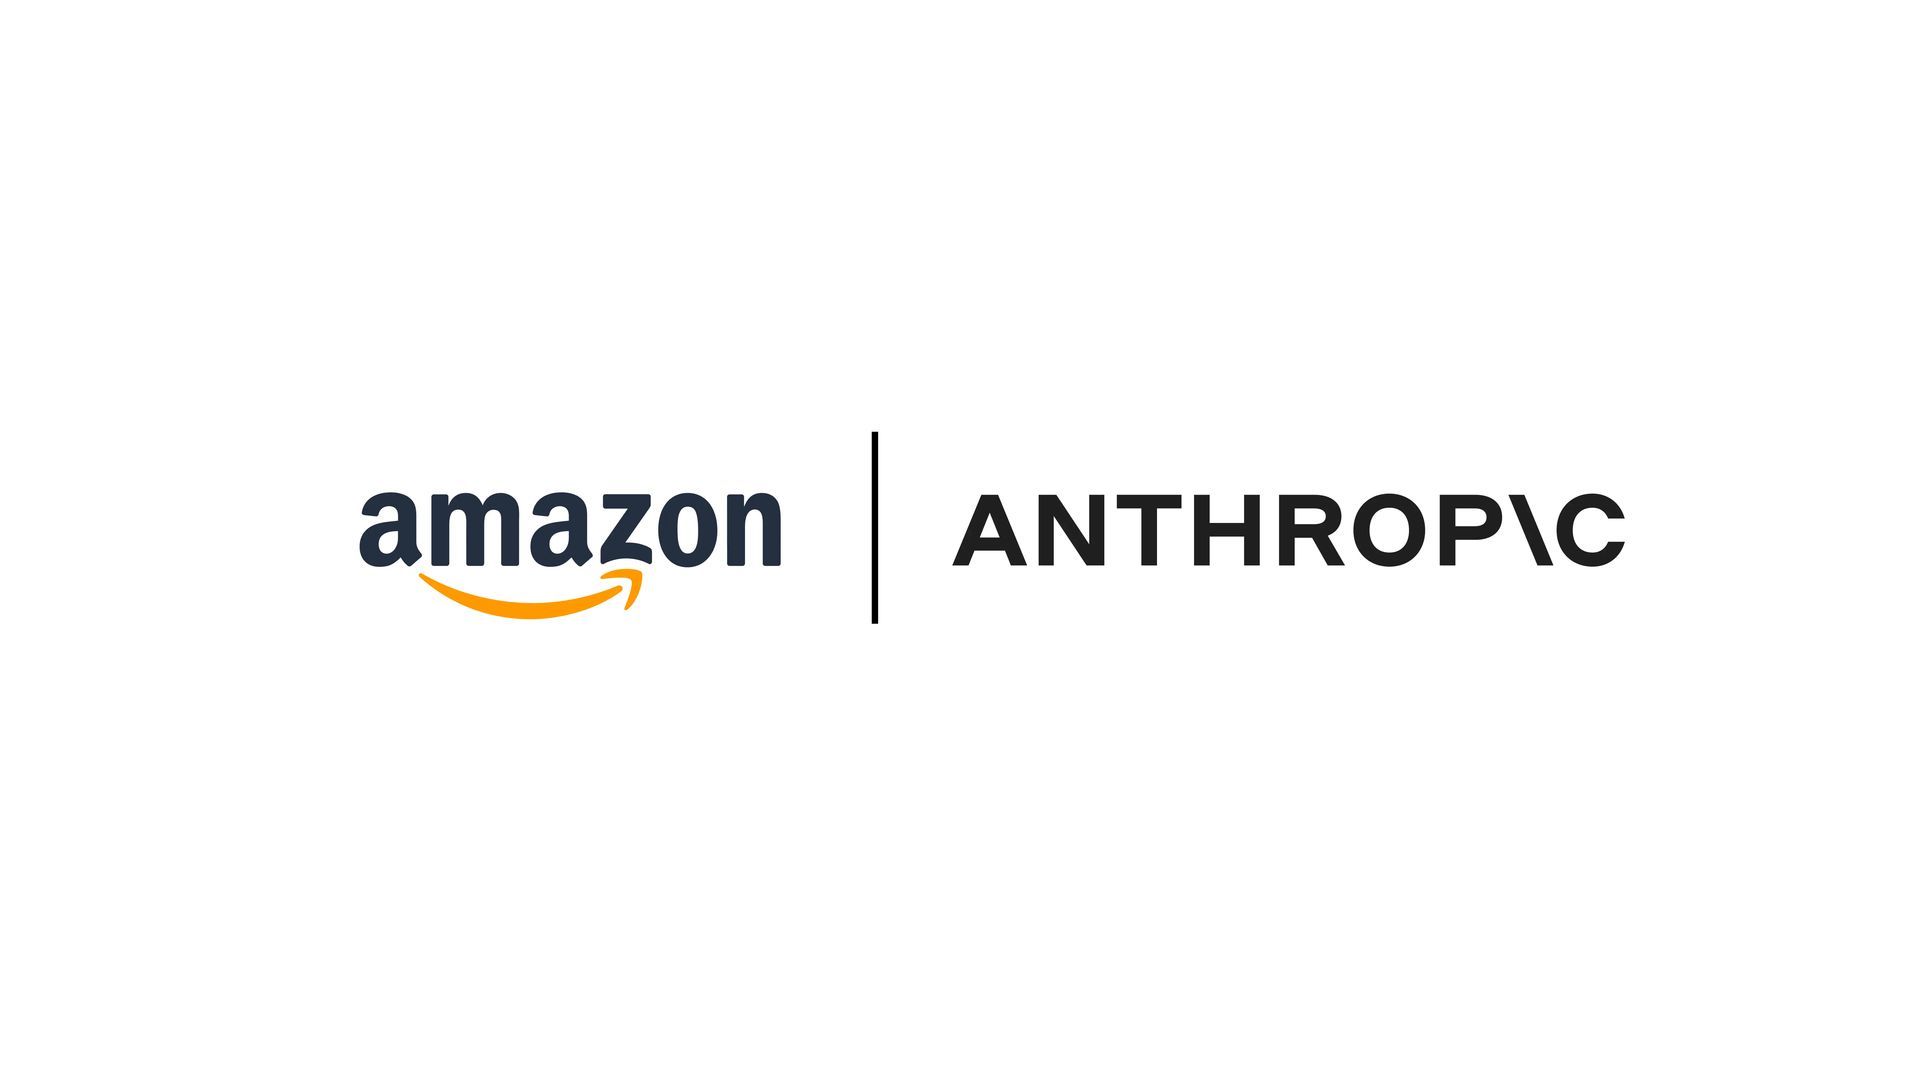 Amazon's $4B bet on Anthropic